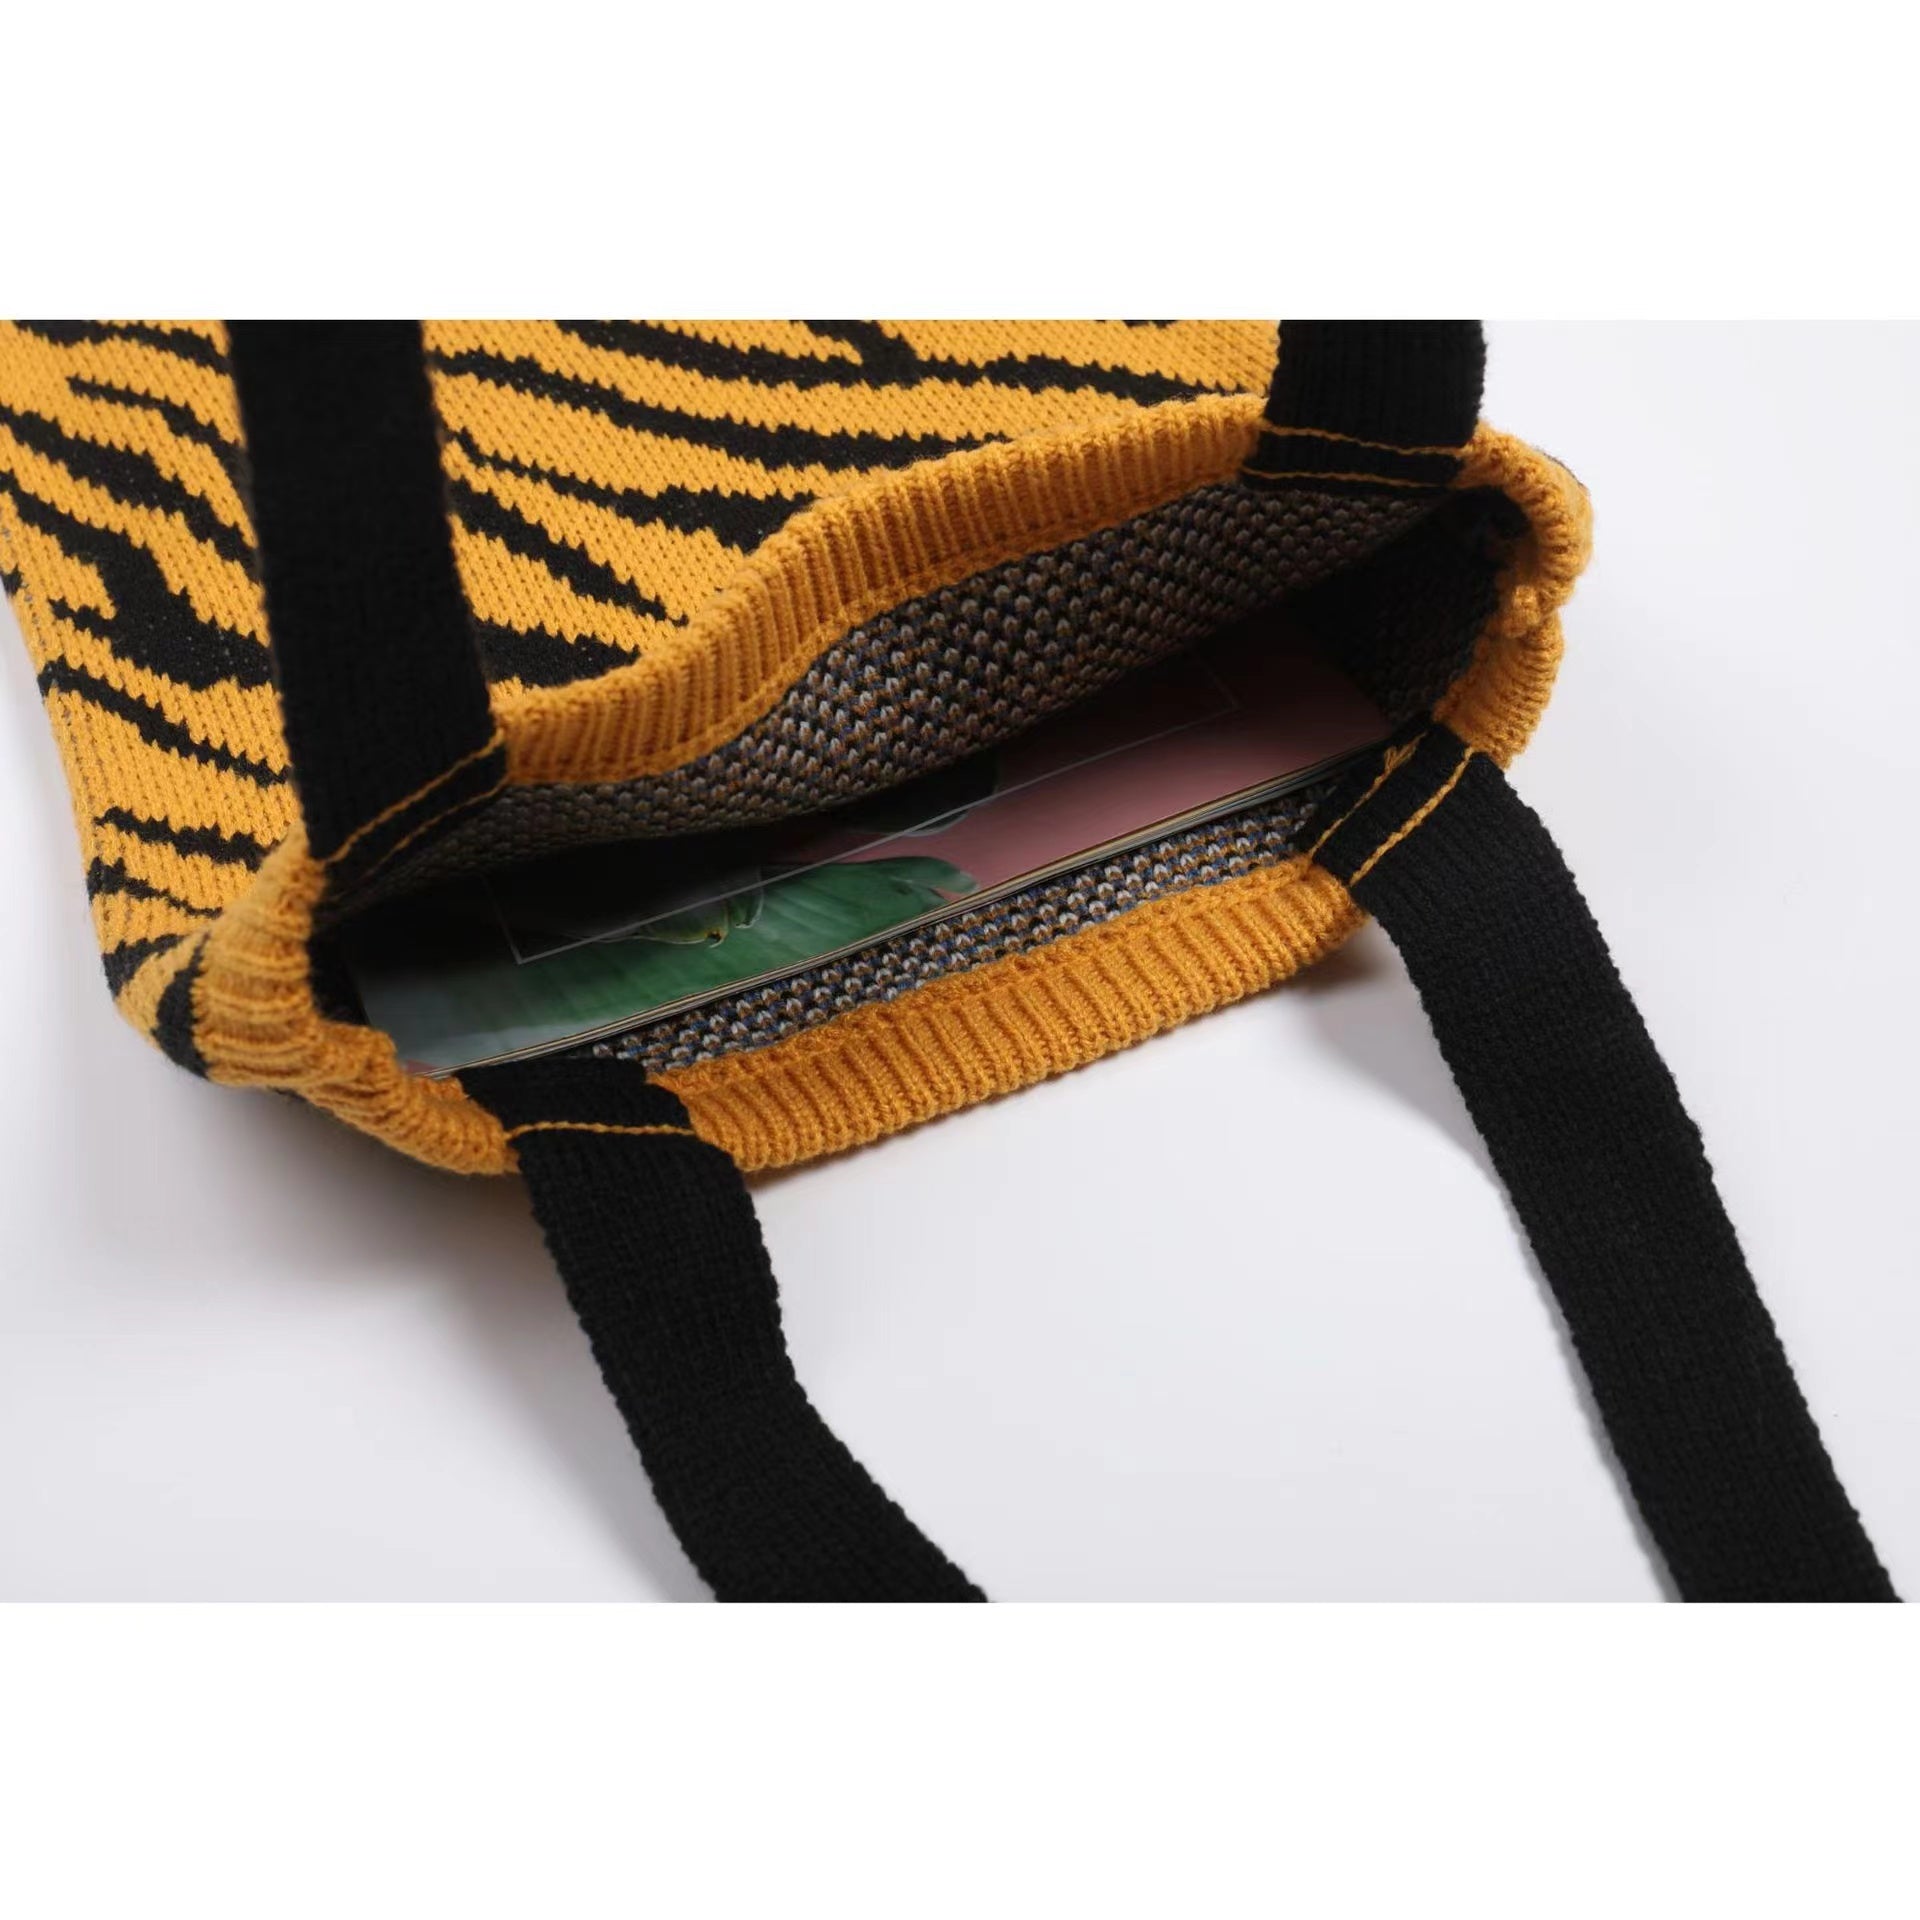 Tiger Pattern Bag